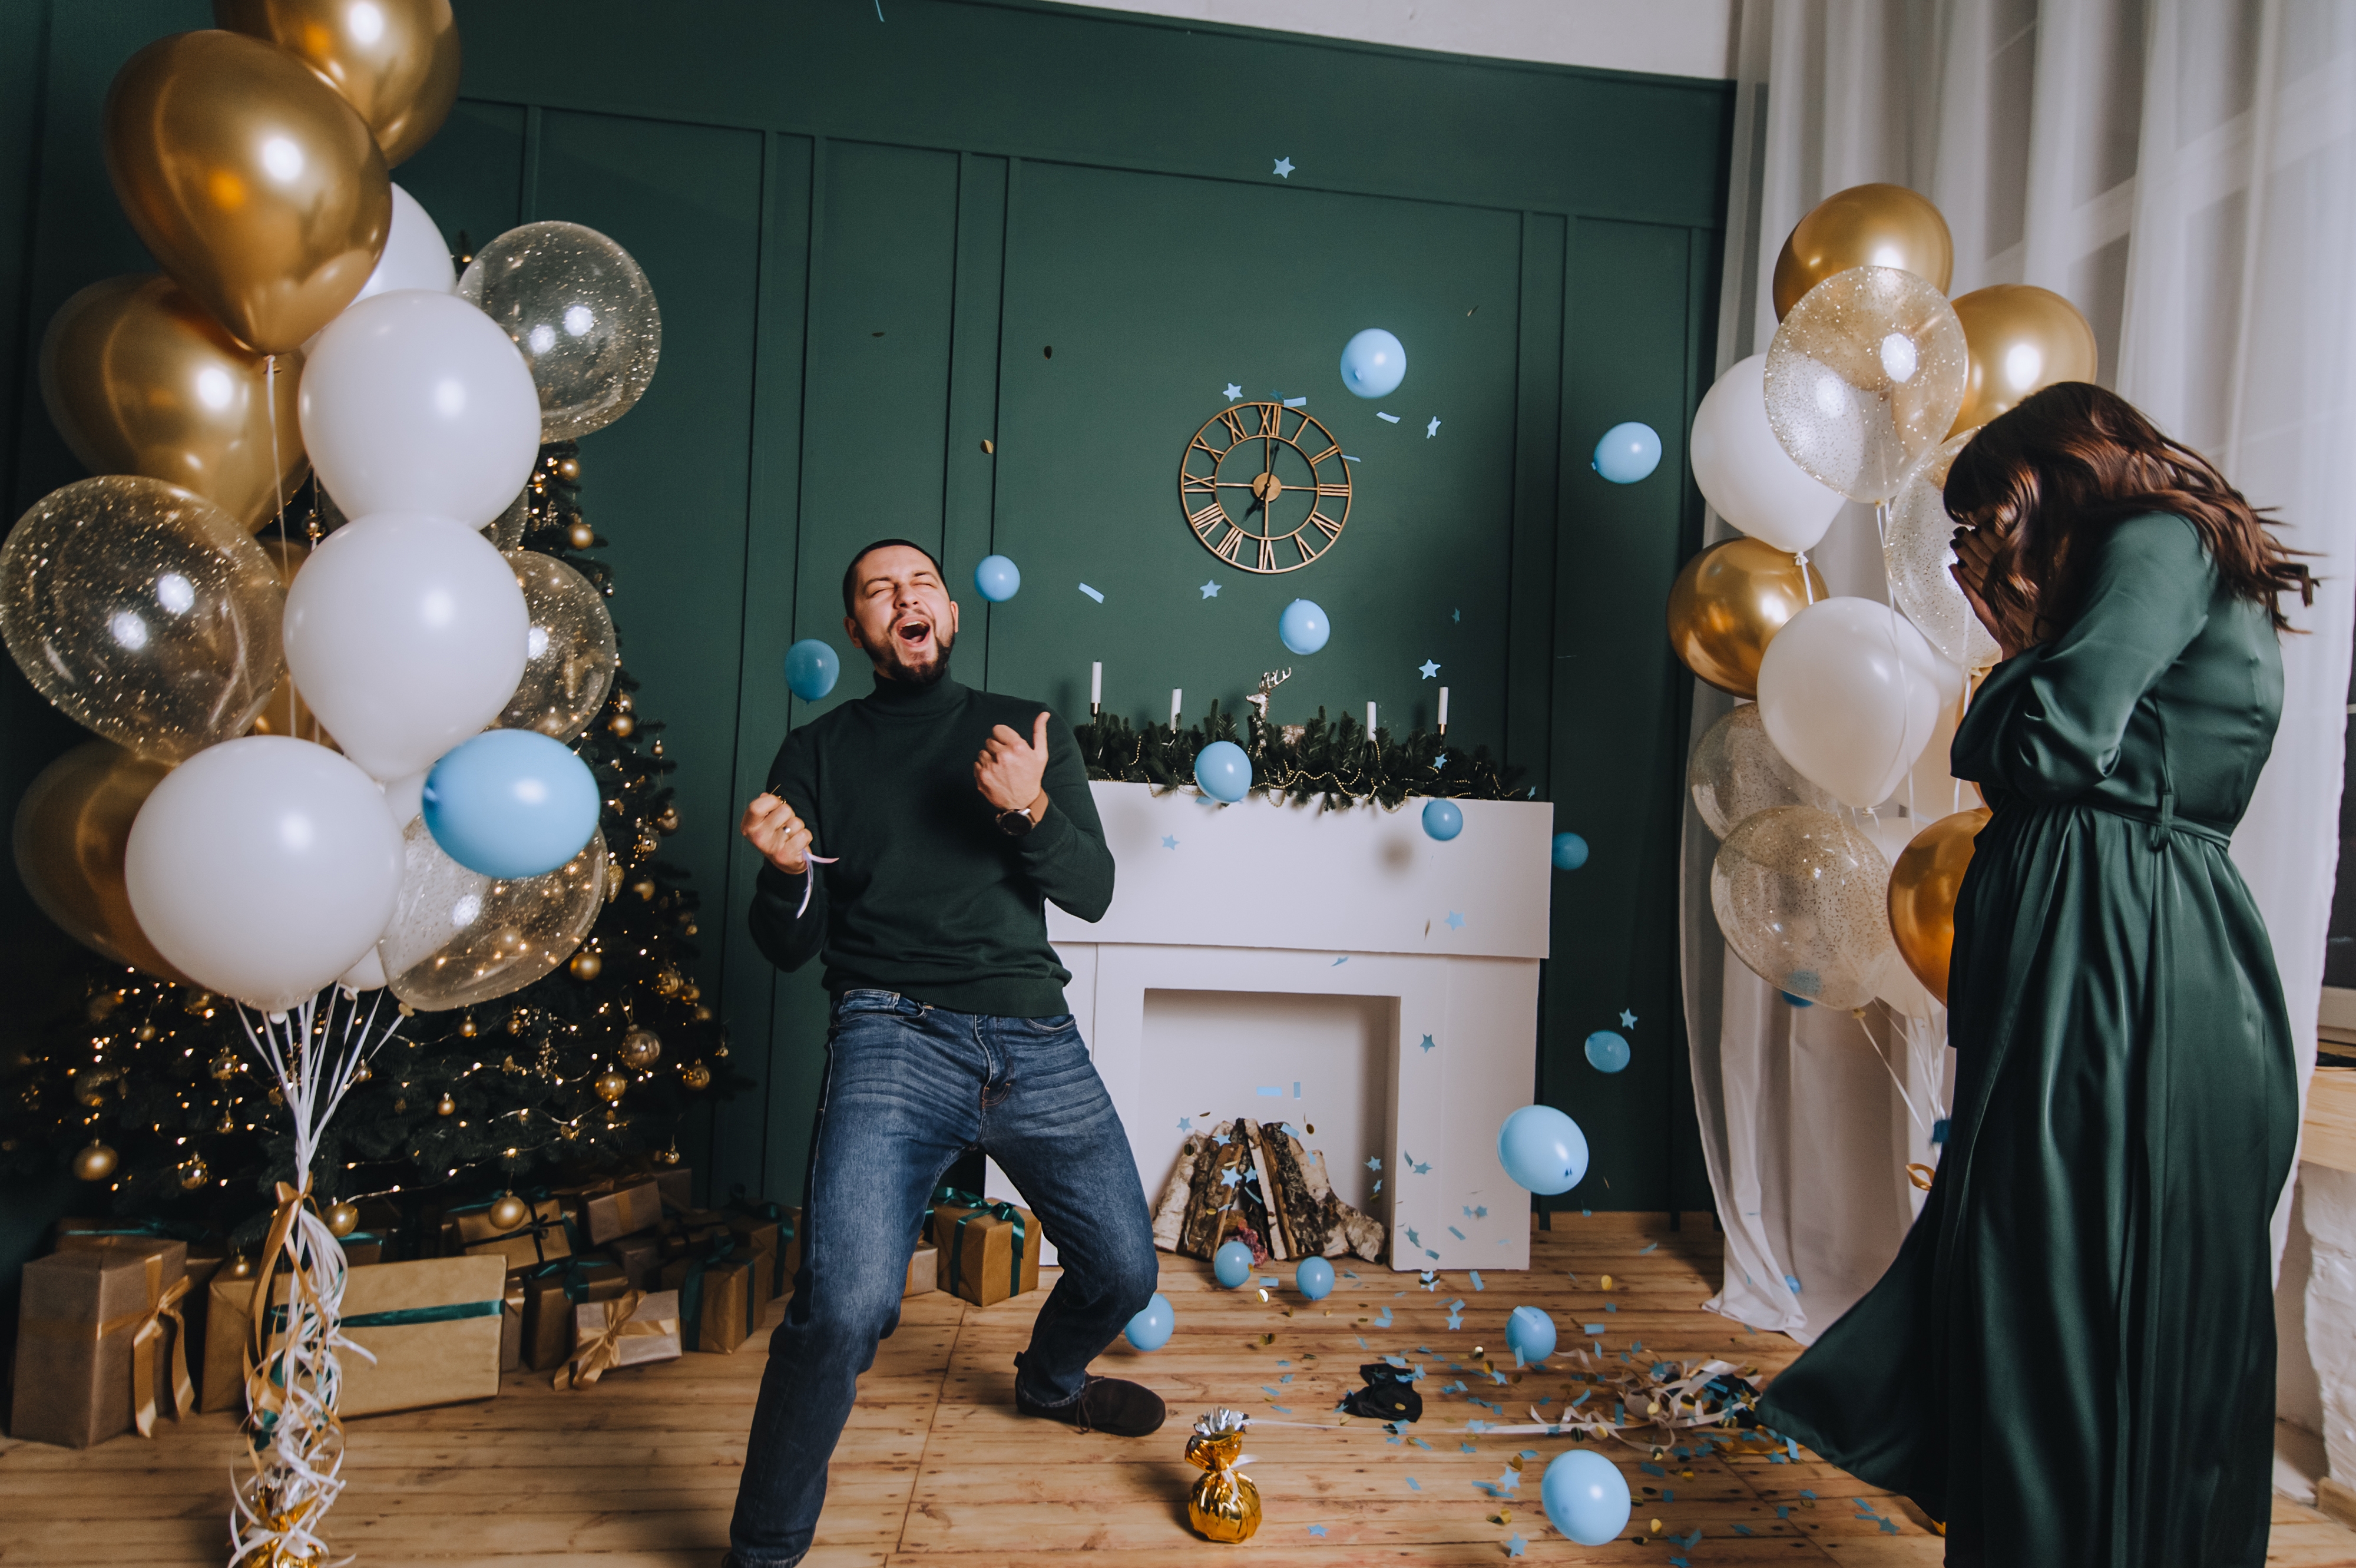 Un homme entouré de ballons bleus célébrant avec enthousiasme | Source : Shutterstock